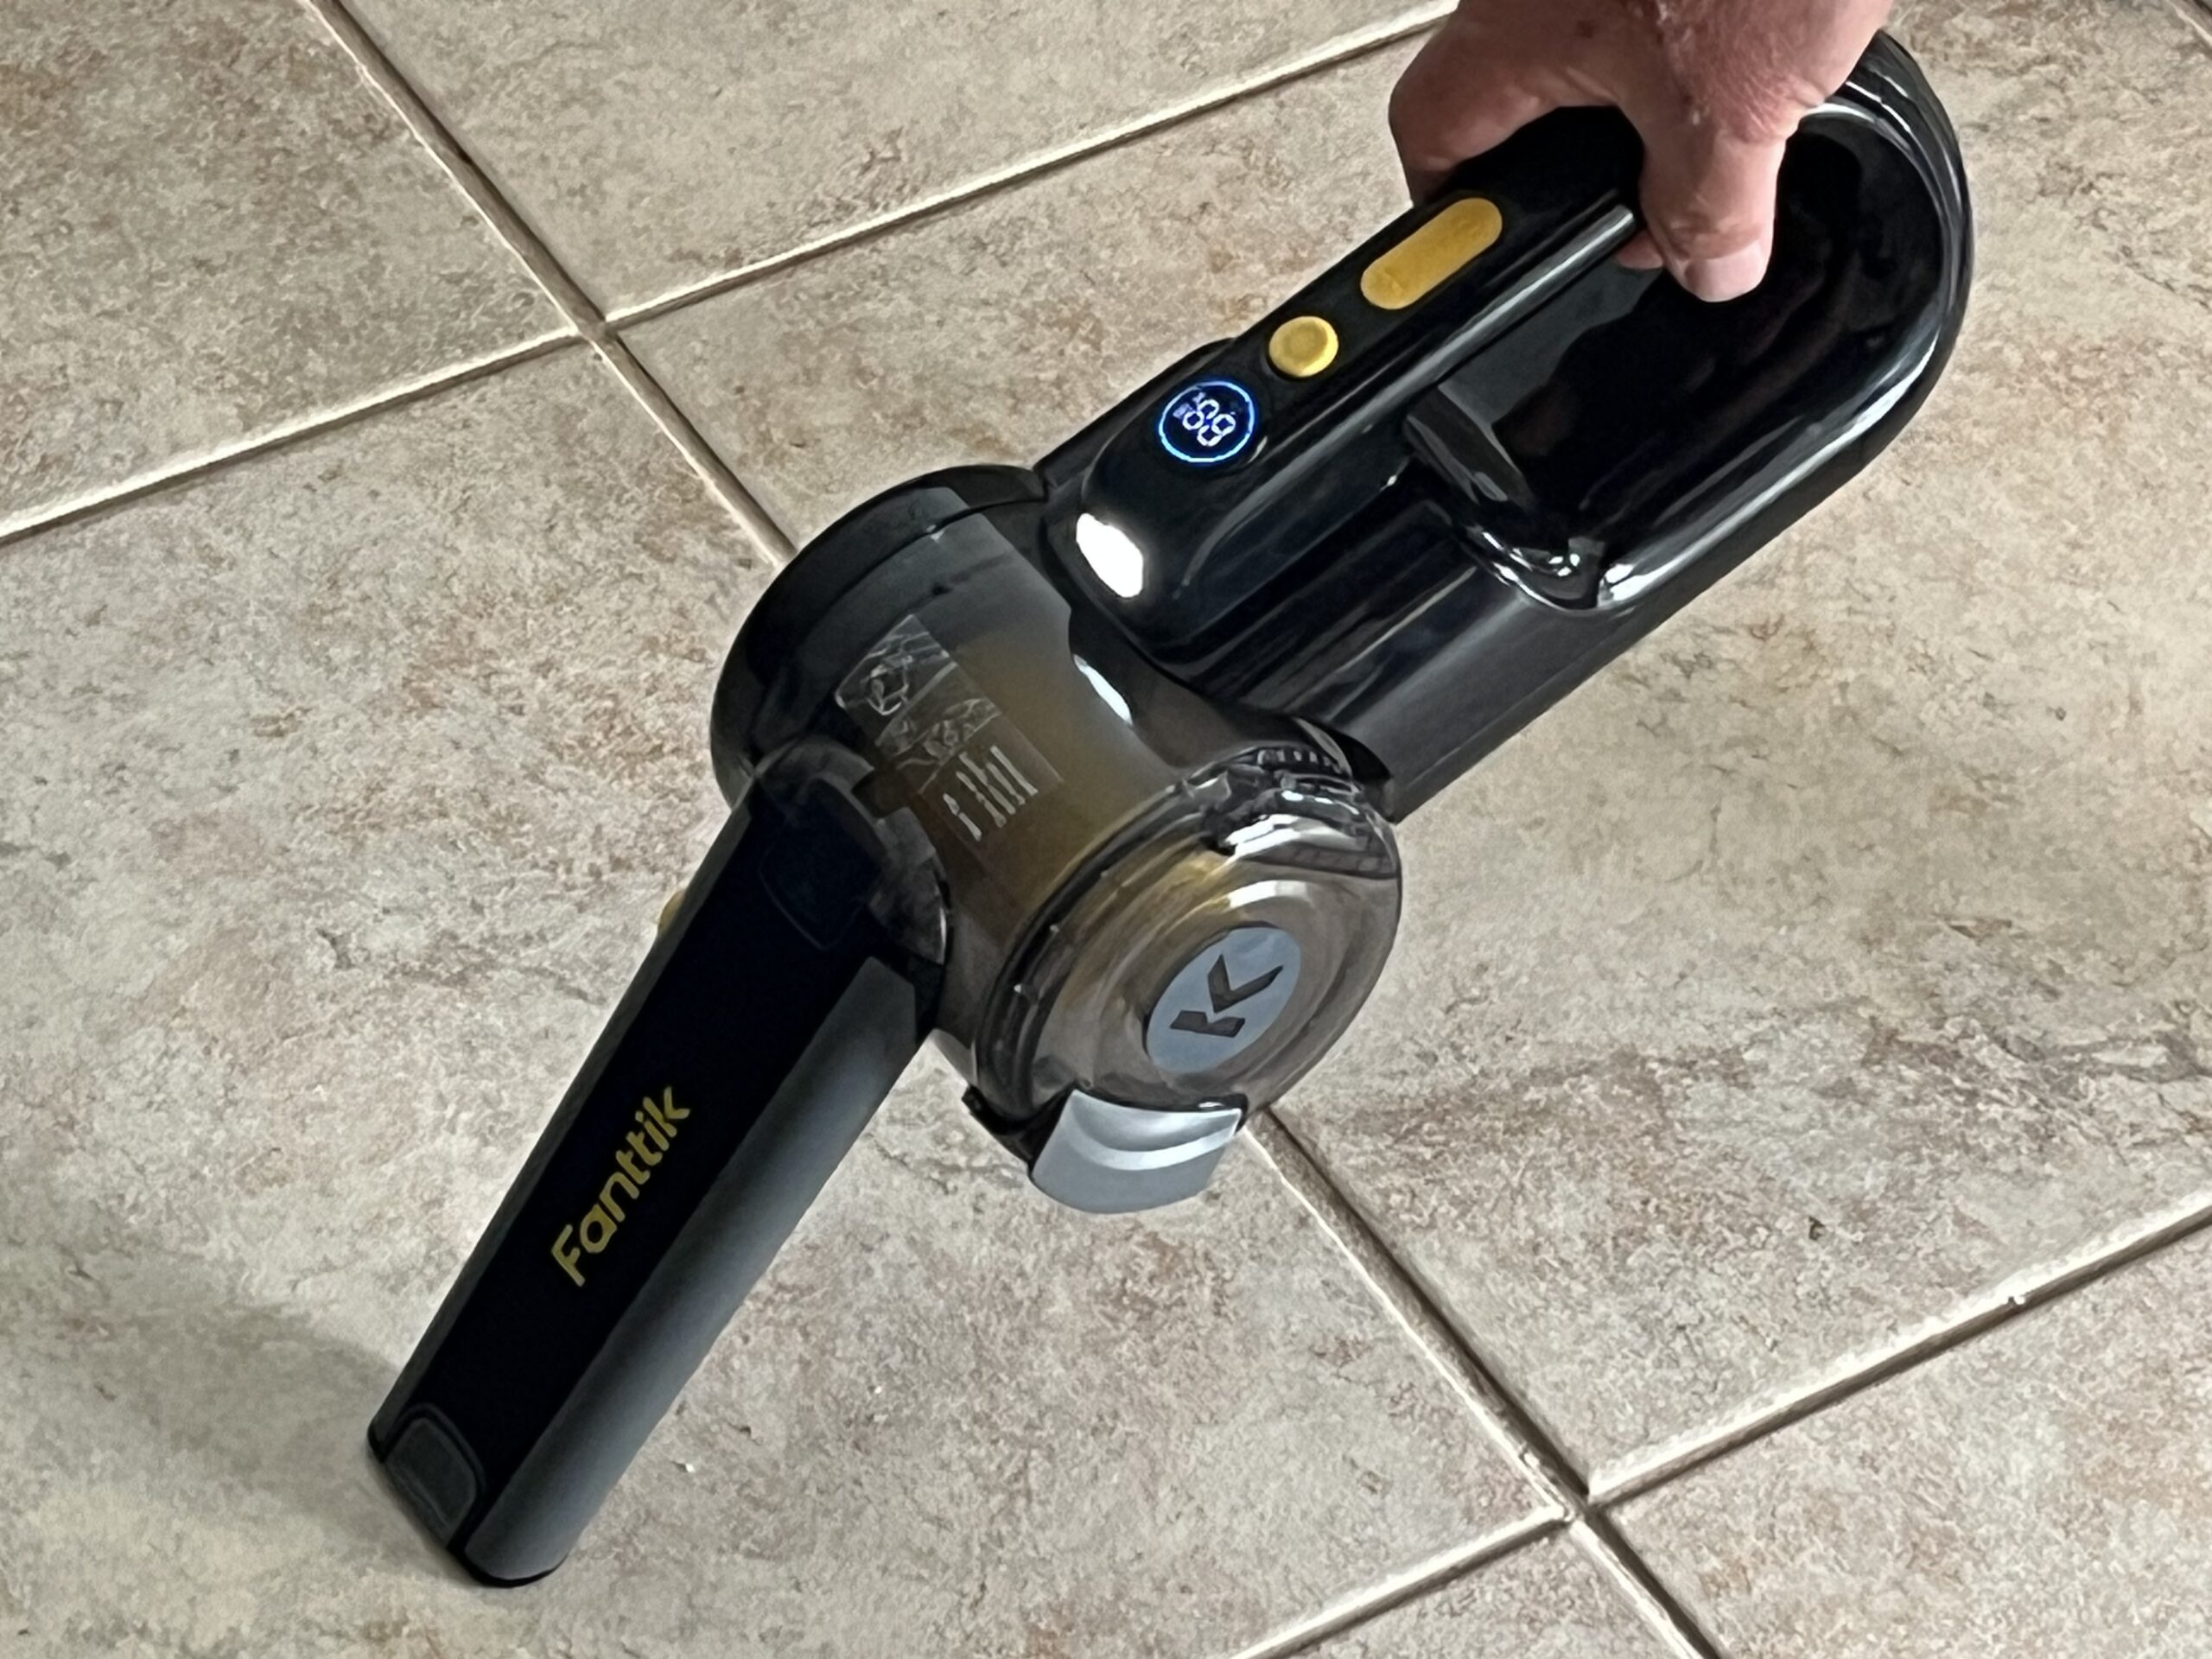 Fanttik V10 Mate Pivoting Cordless Handheld Vacuum